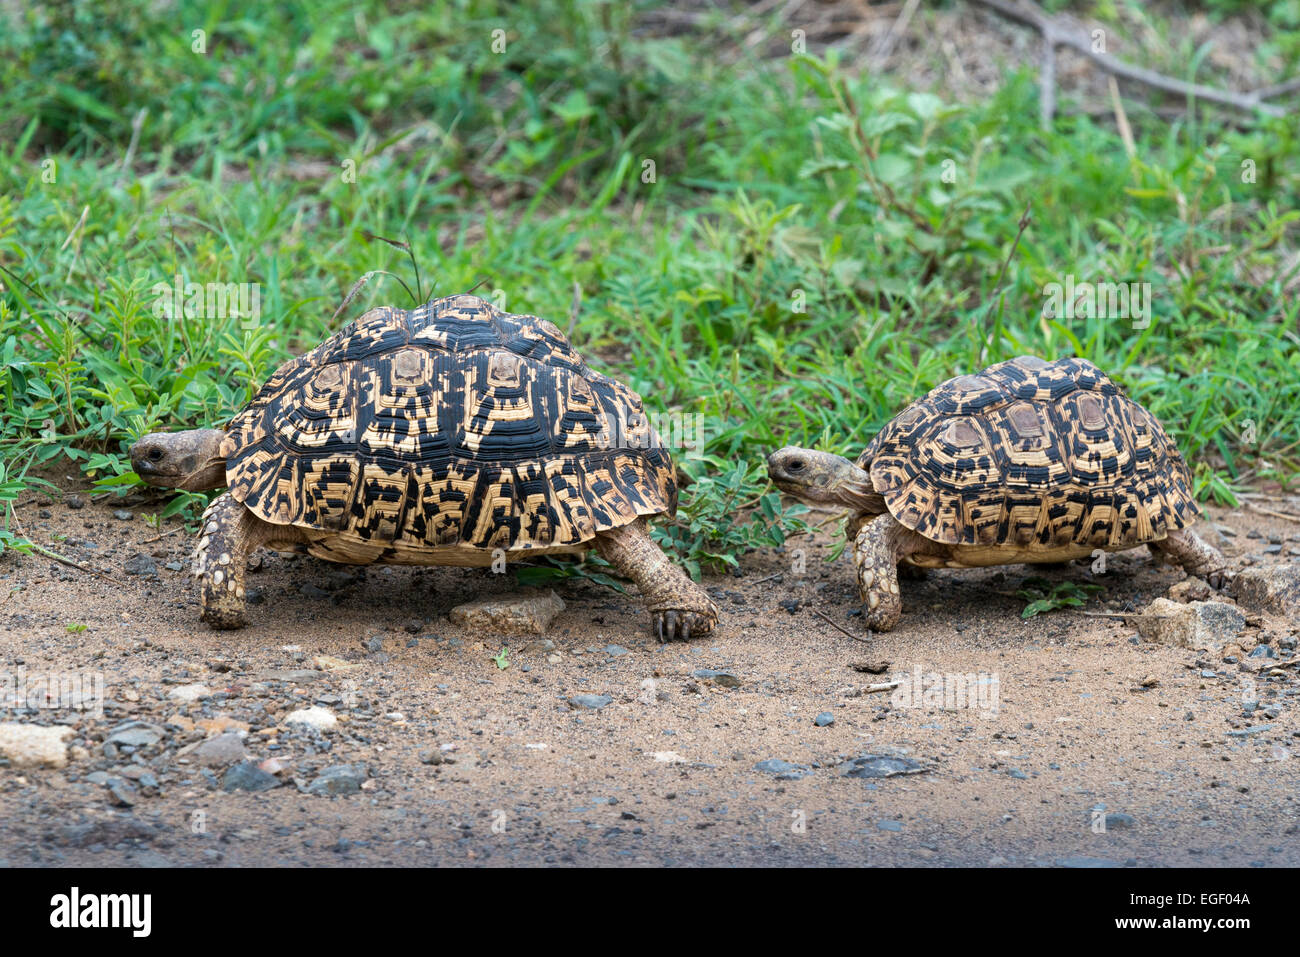 Le comportement d'accouplement deux tortues Léopard (Geochelone pardalis), Kruger National Park, Afrique du Sud, l'Afrique Banque D'Images